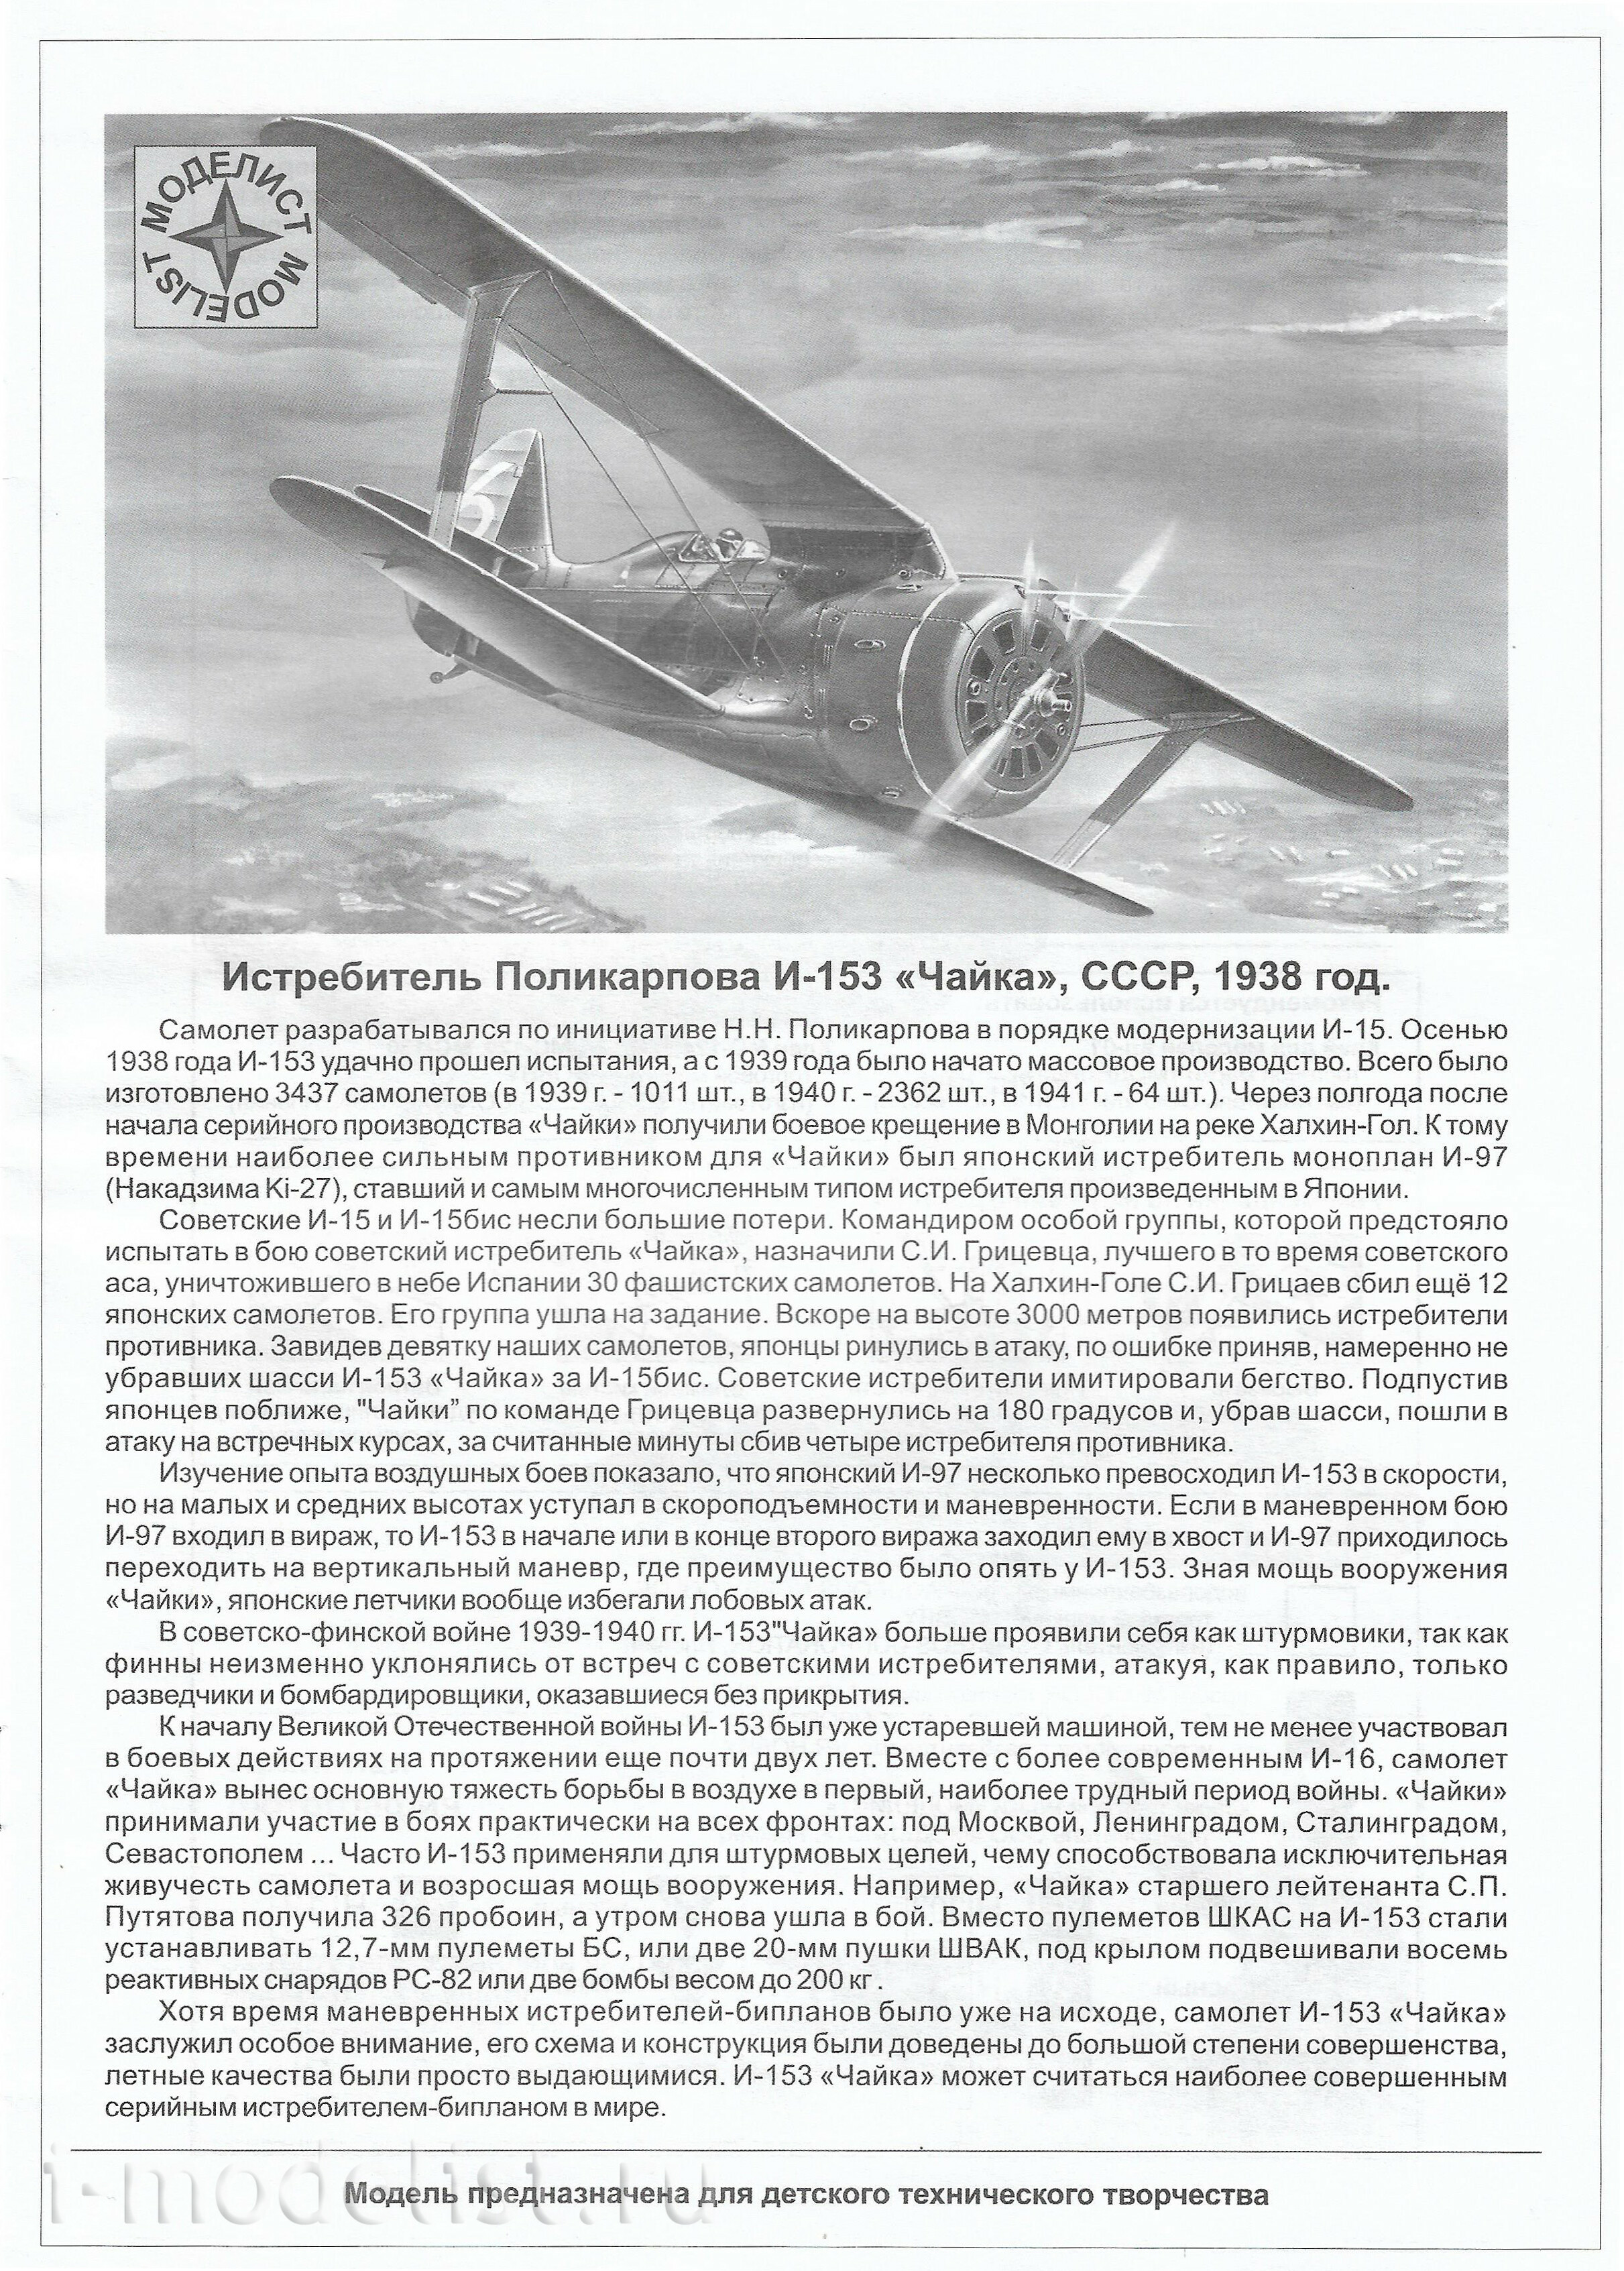 207226 Modeler 1/72 Fighter Polikarpov I-153 